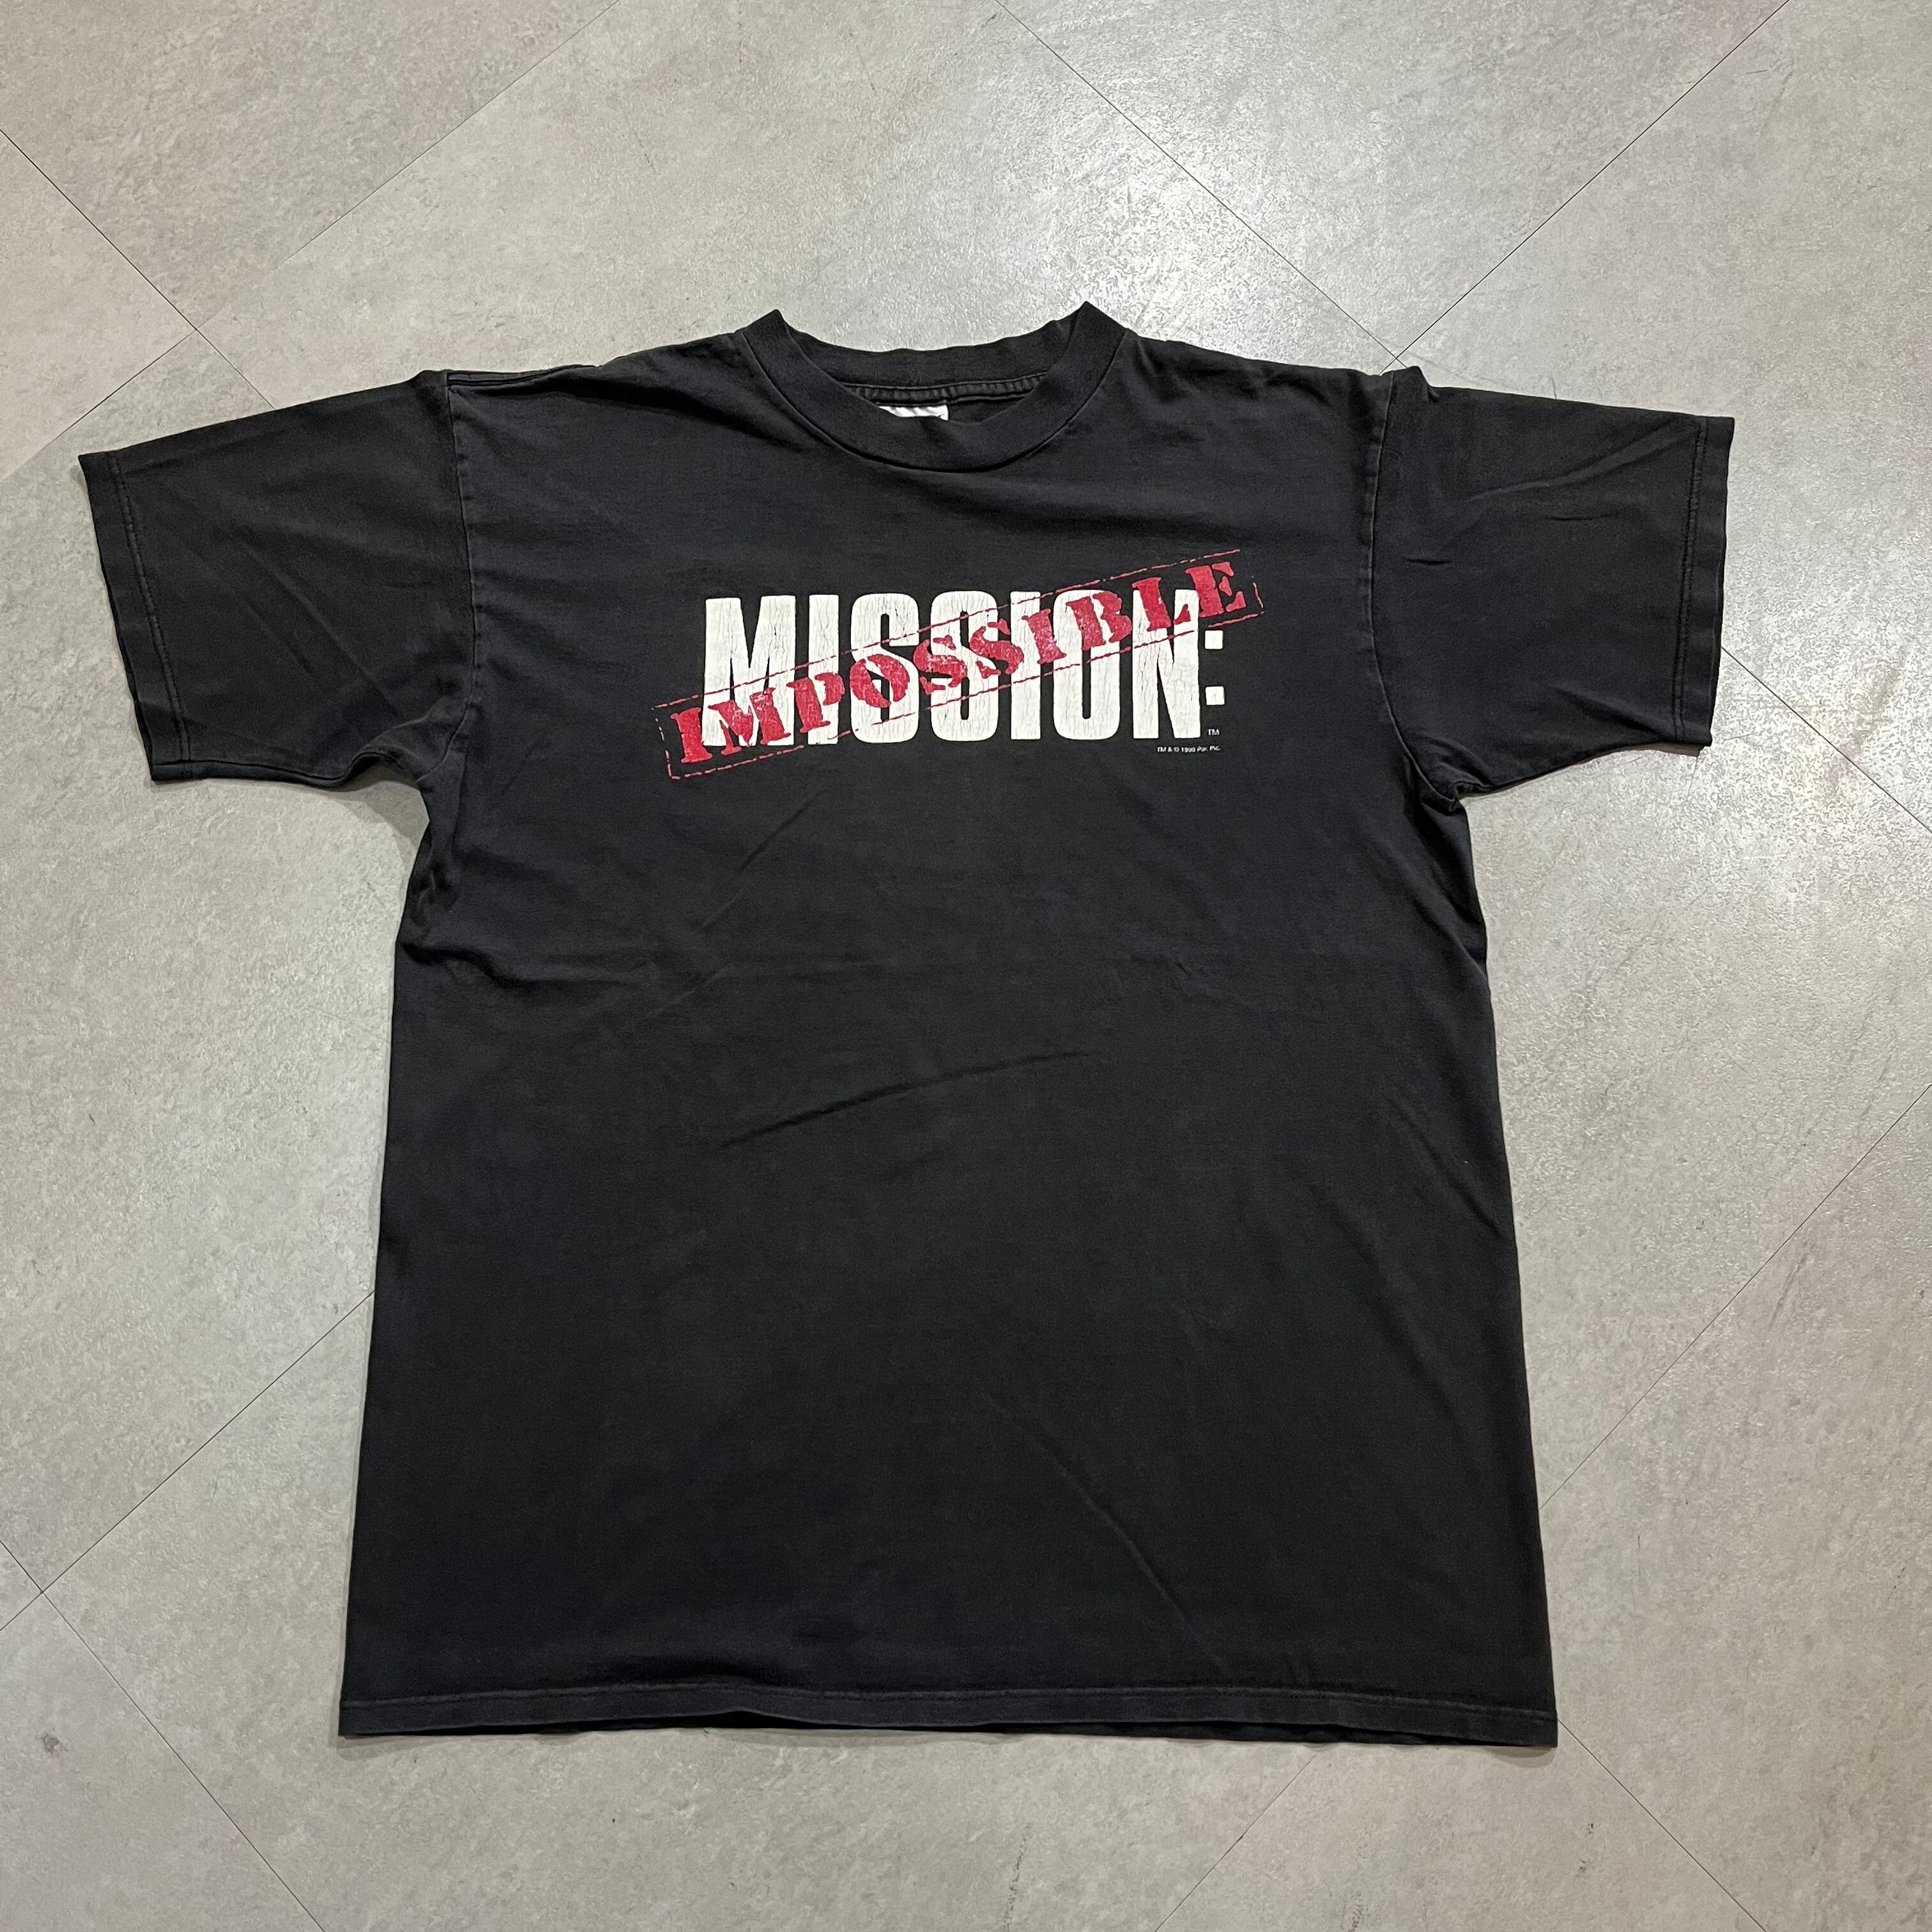 激レア90'S当時物 映画Mission Impossible Tシャツ XL